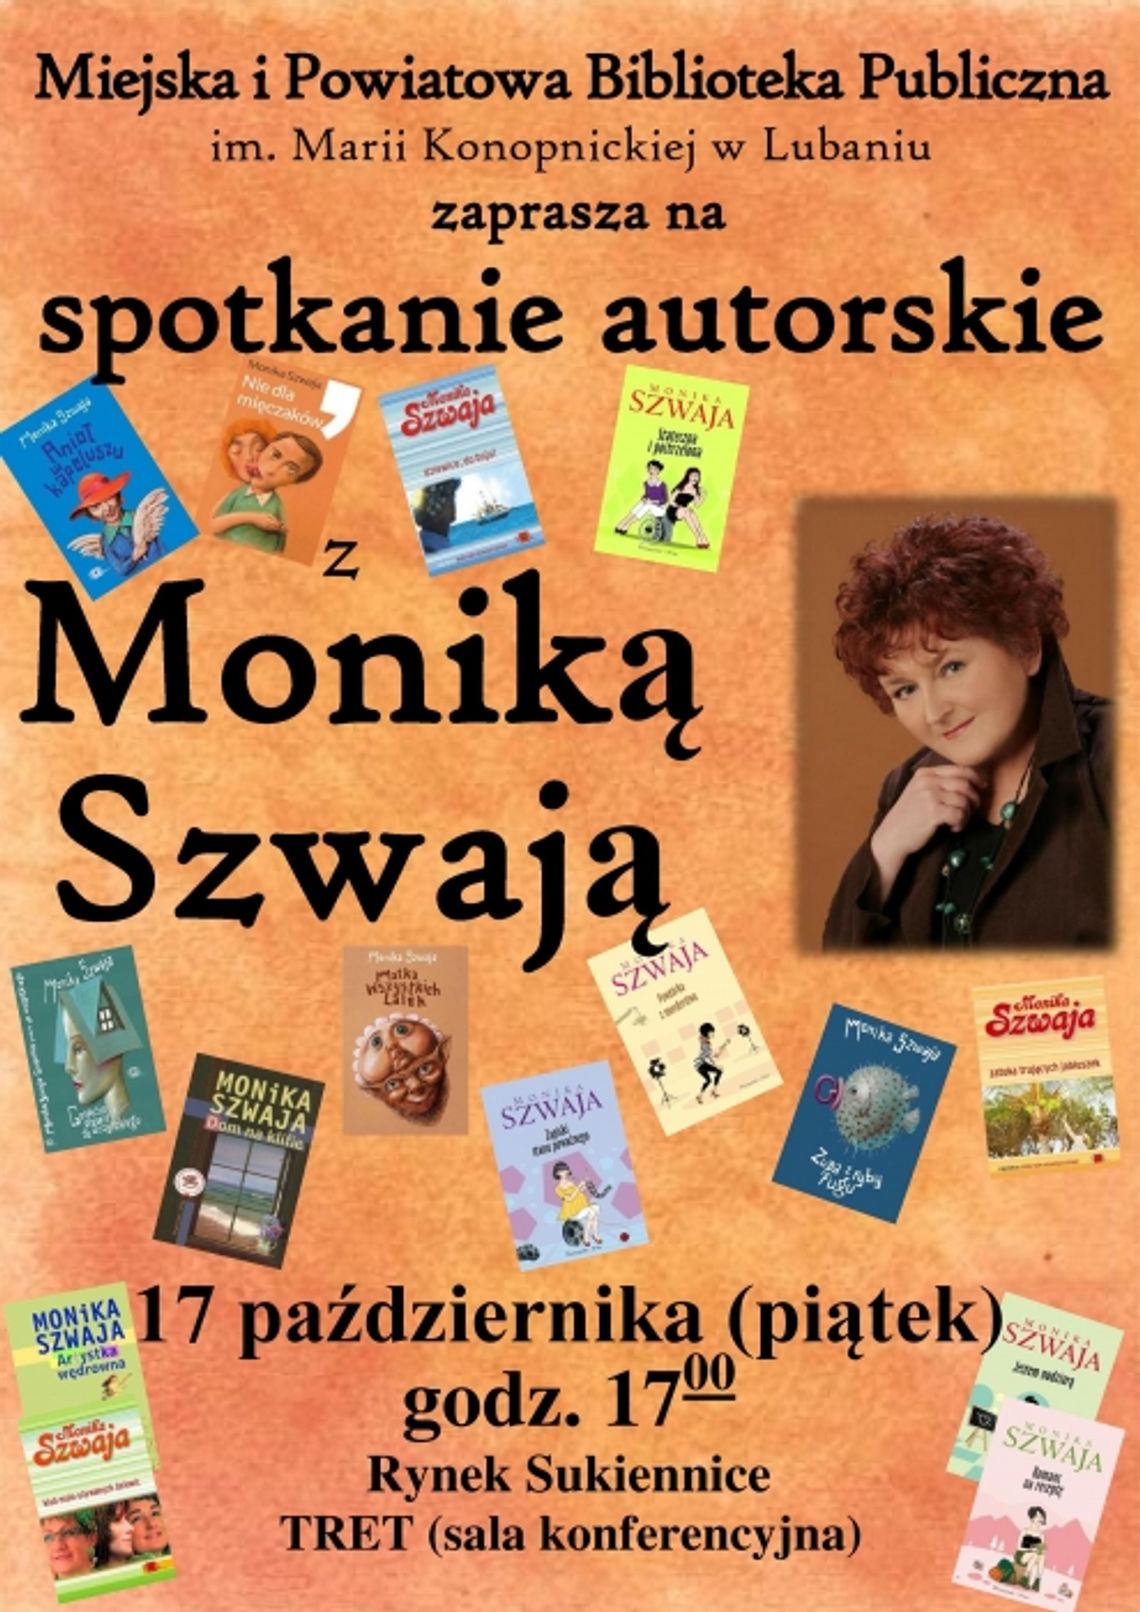 Spotkanie autorskie z Moniką Szwają